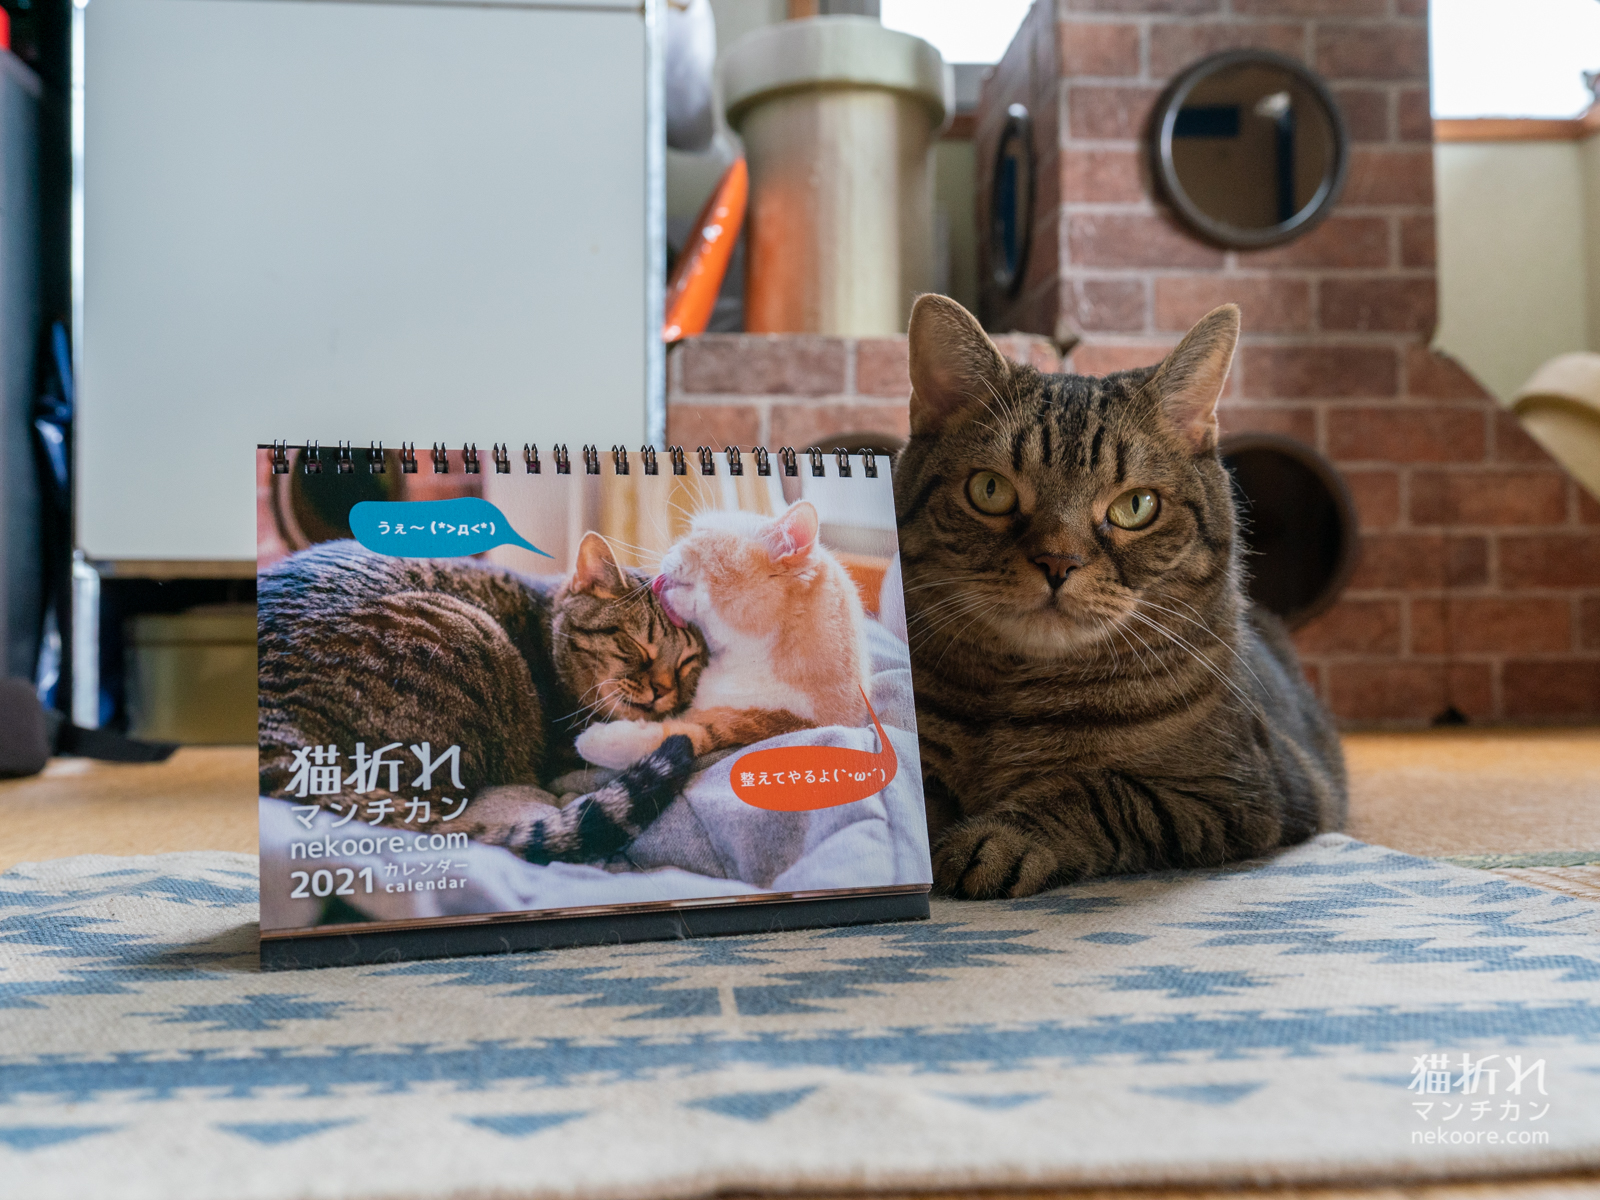 猫折れ21卓上カレンダー 今年もおつくりいたしました